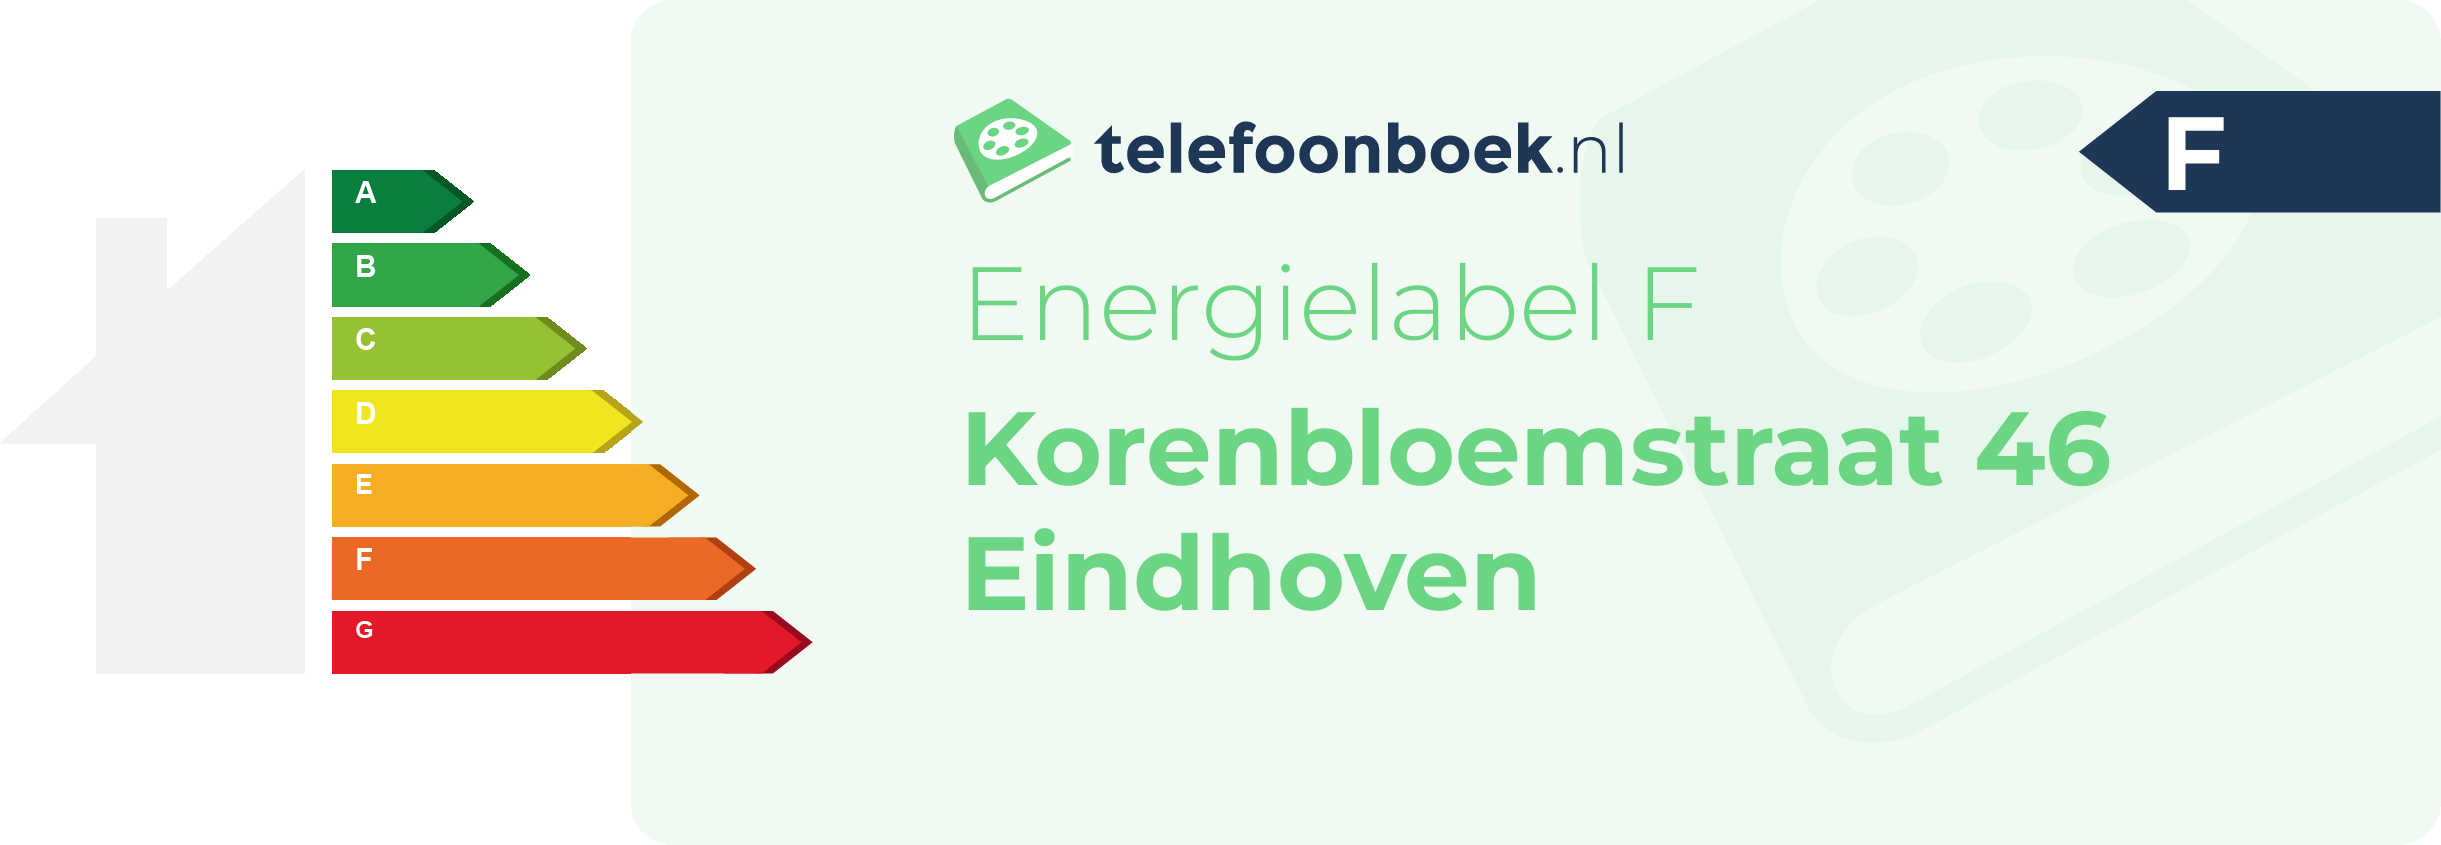 Energielabel Korenbloemstraat 46 Eindhoven